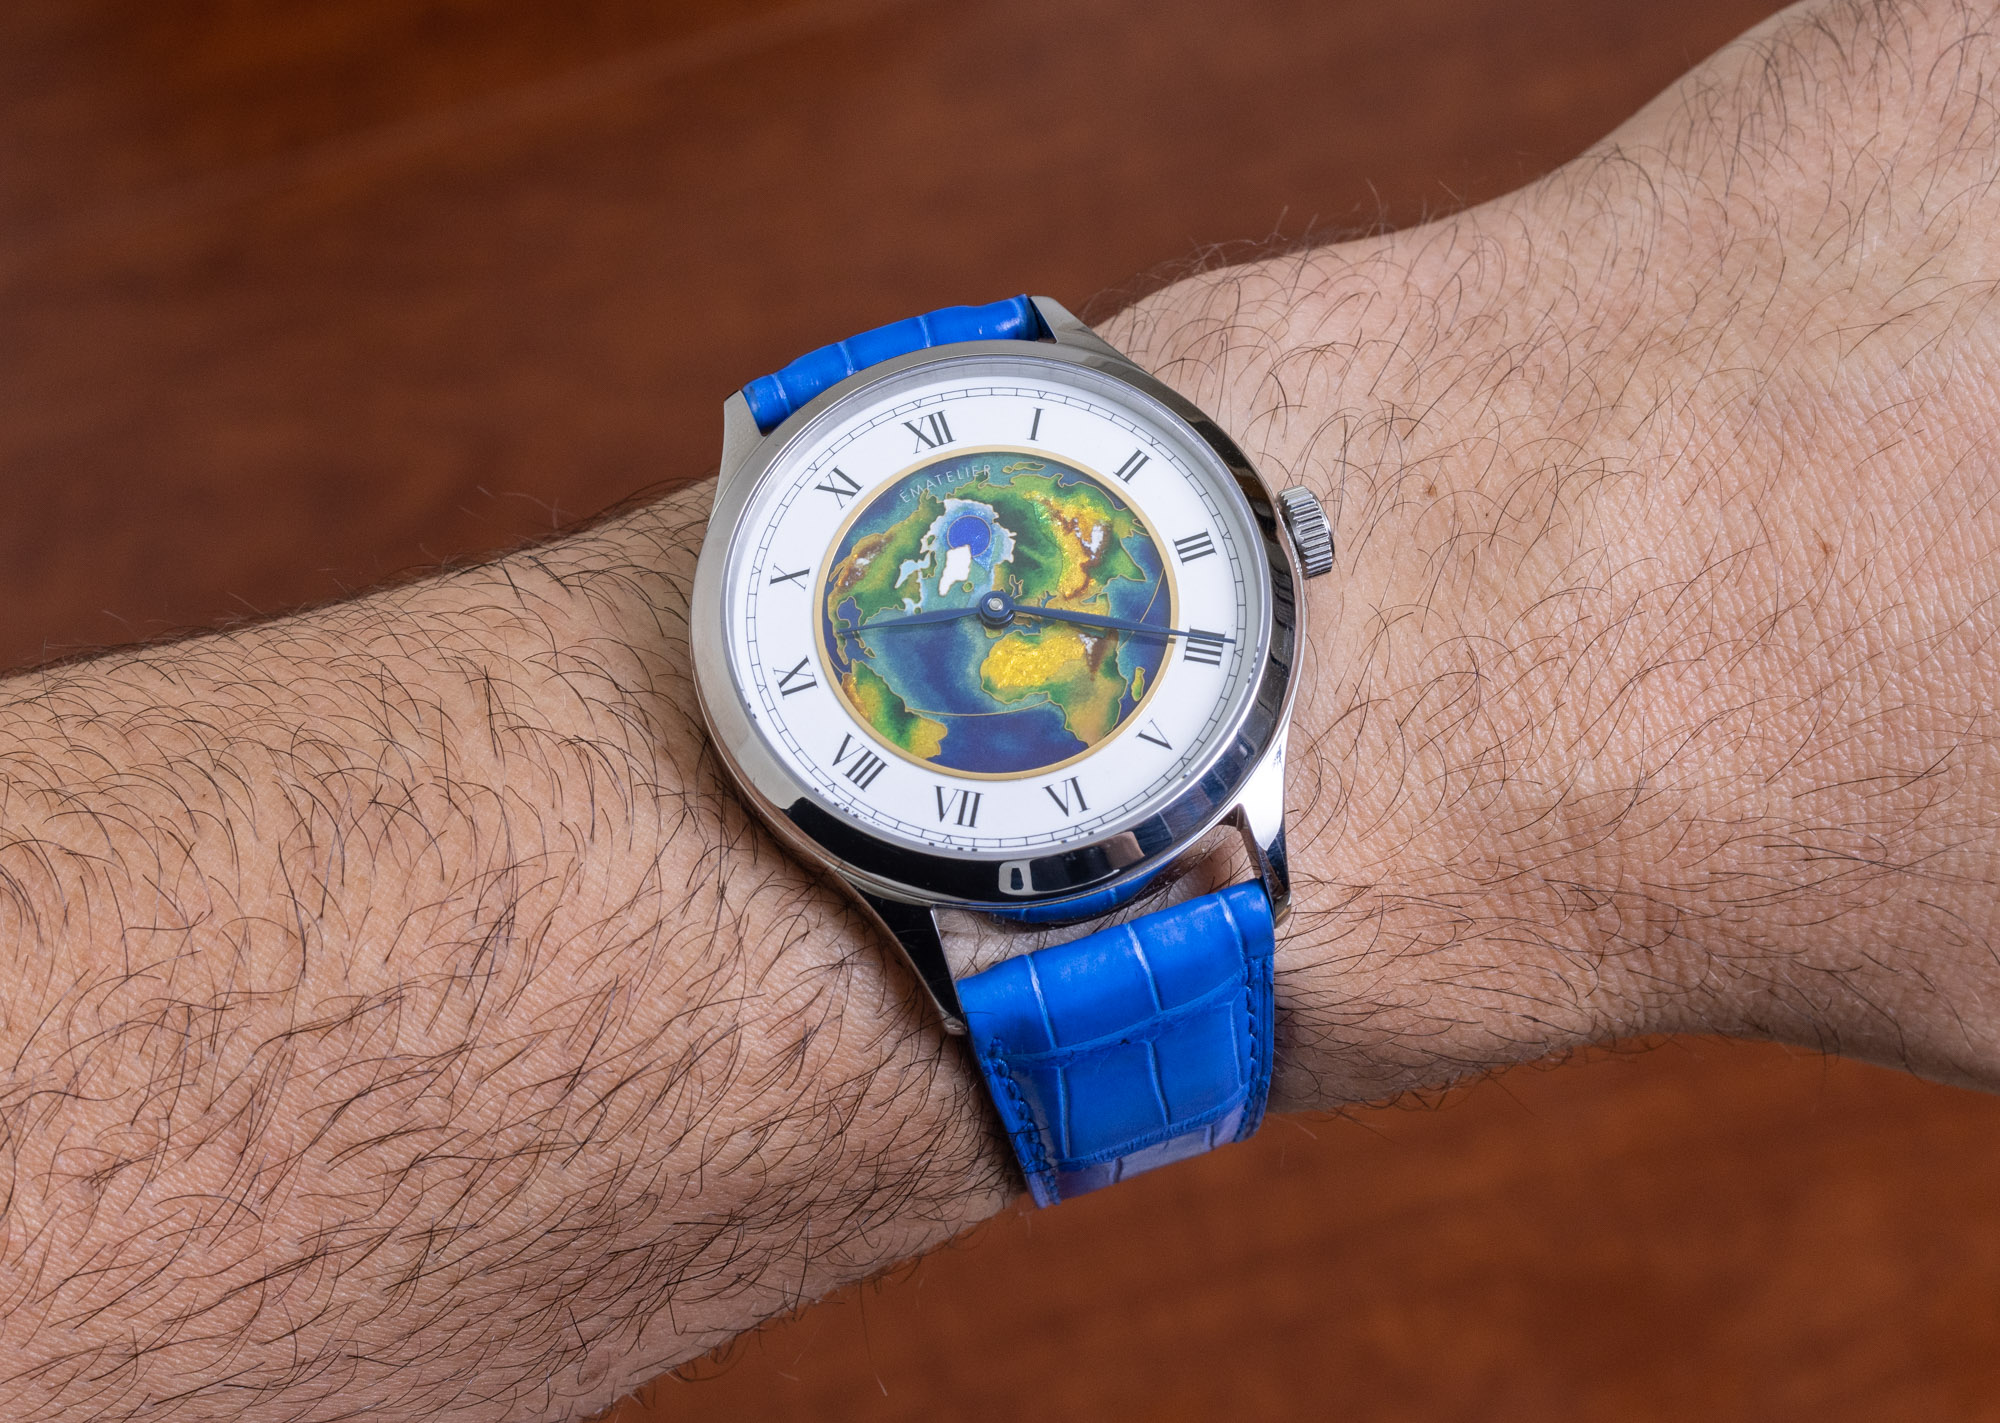 加拿大手绘表盘钟表制造商Ematelier的景泰蓝珐琅表盘手表